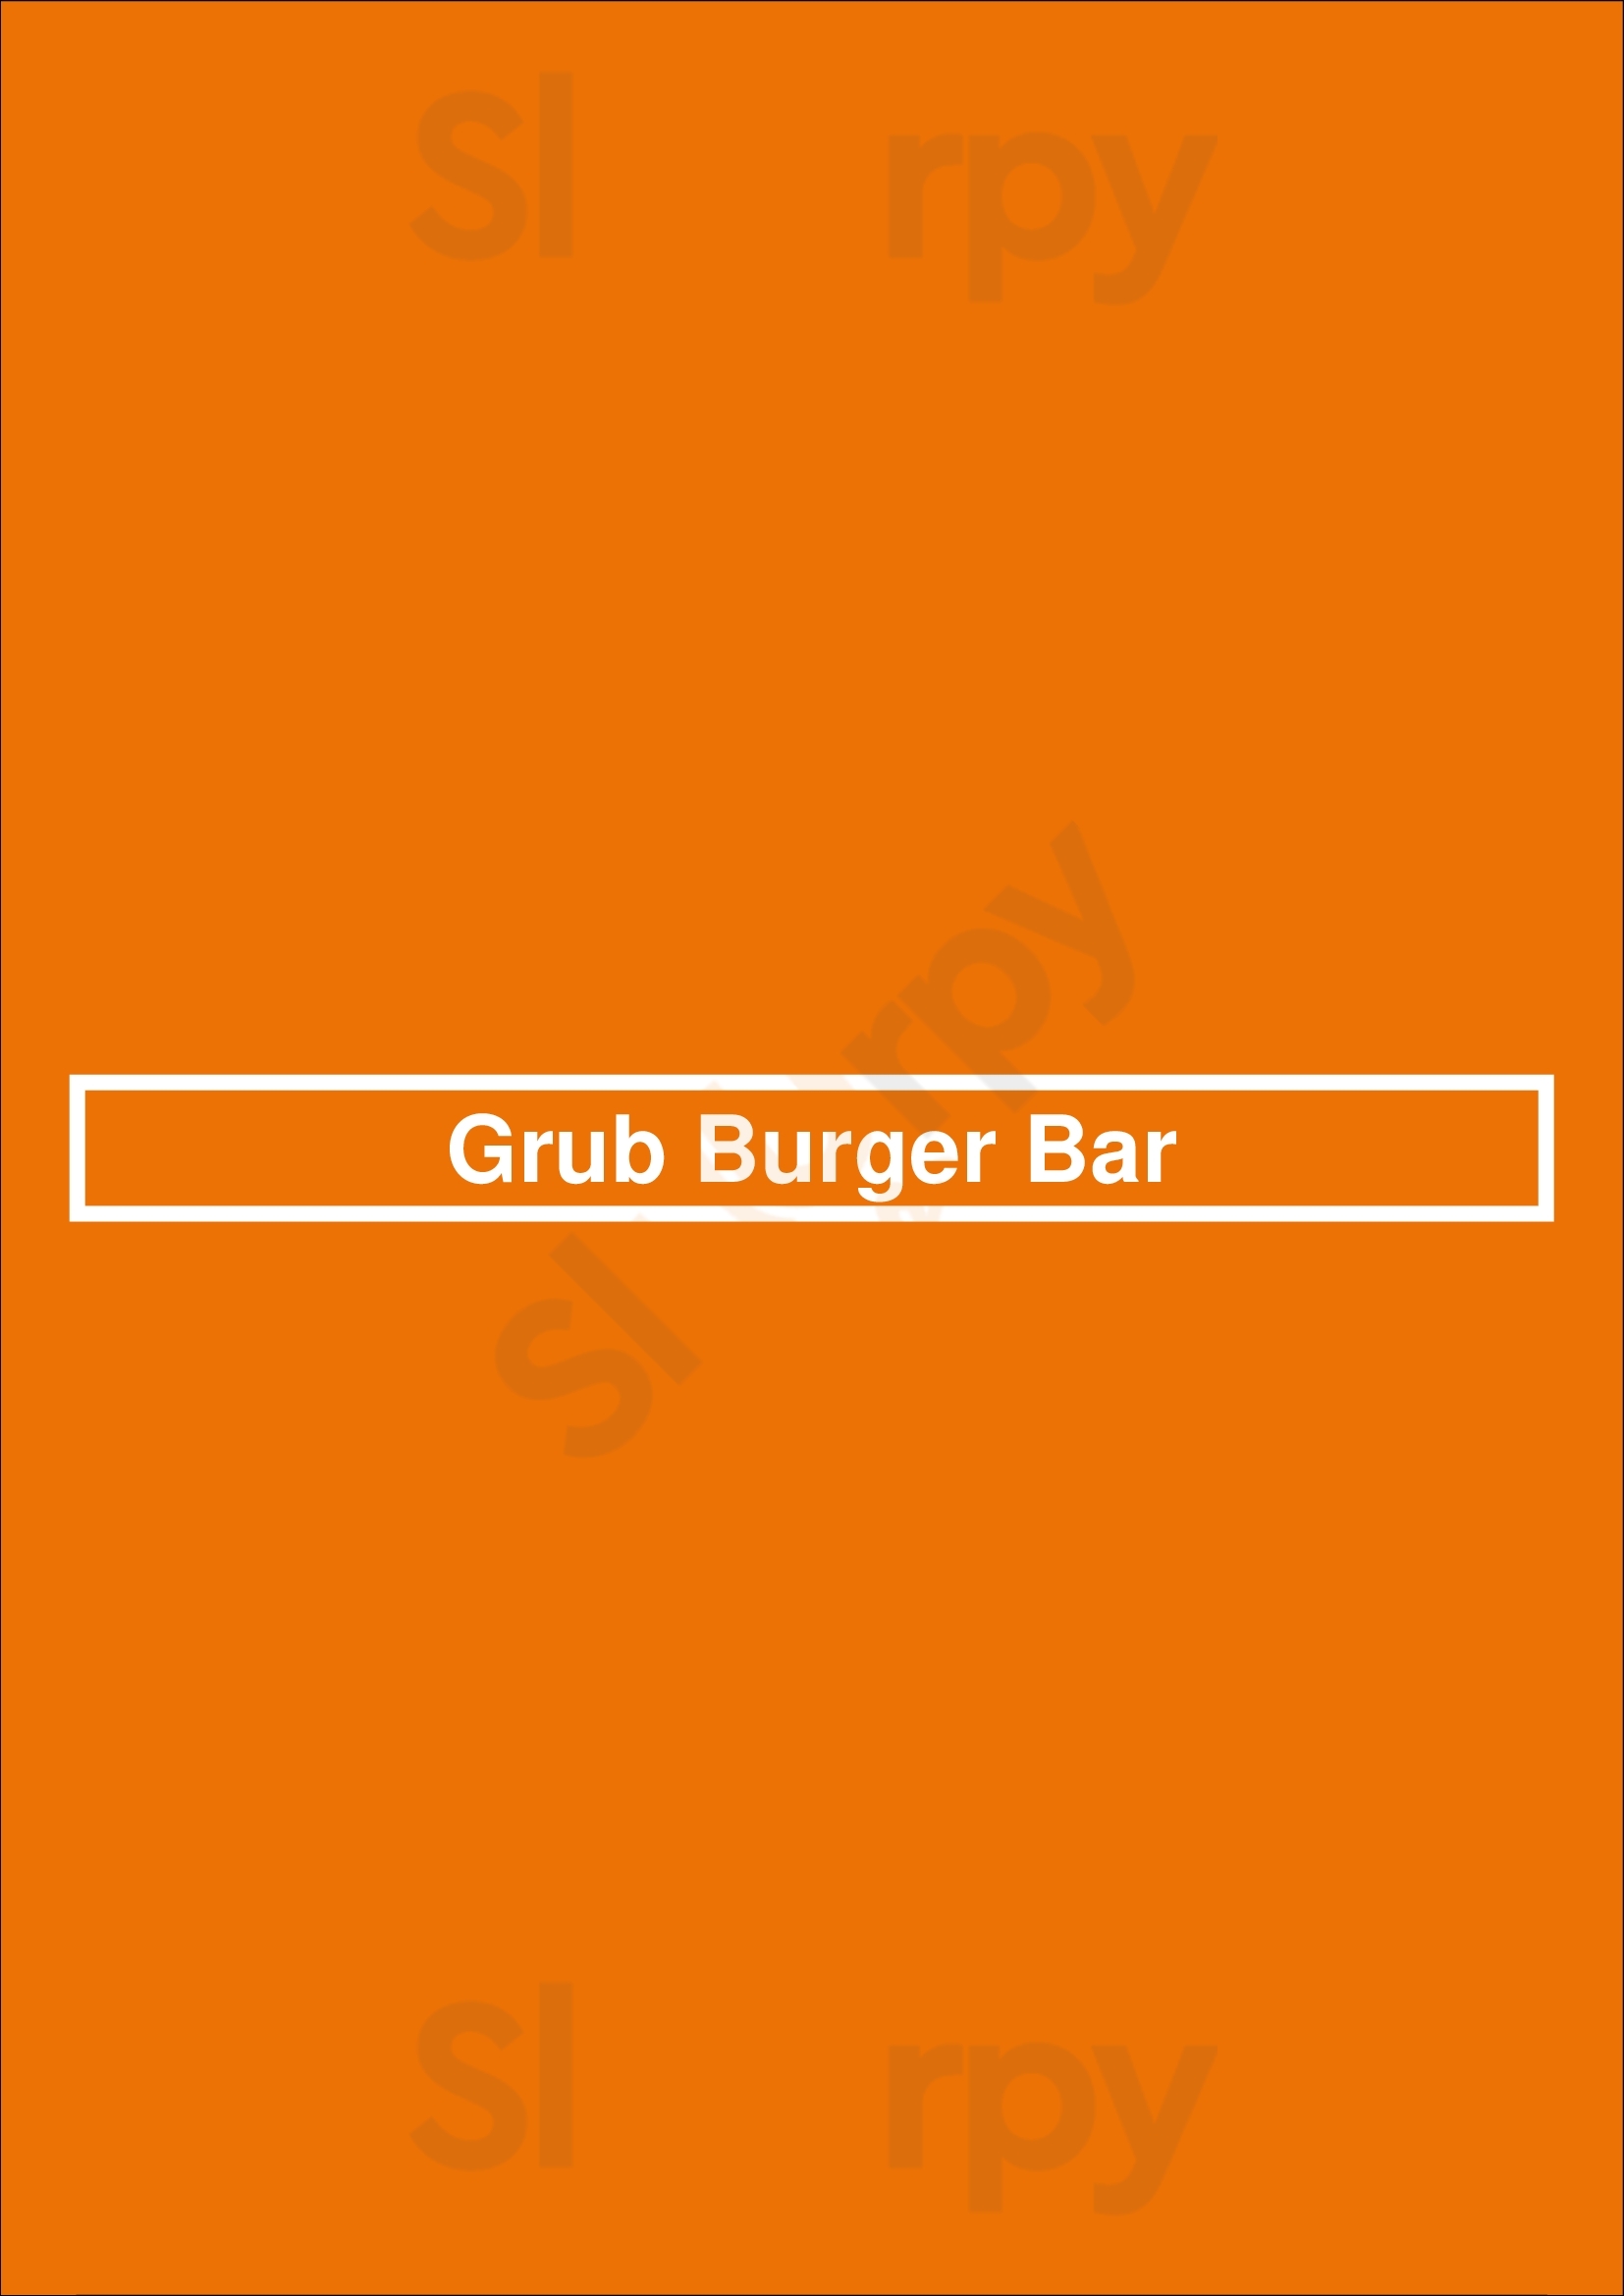 Grub Kitchen & Bar Gainesville Menu - 1